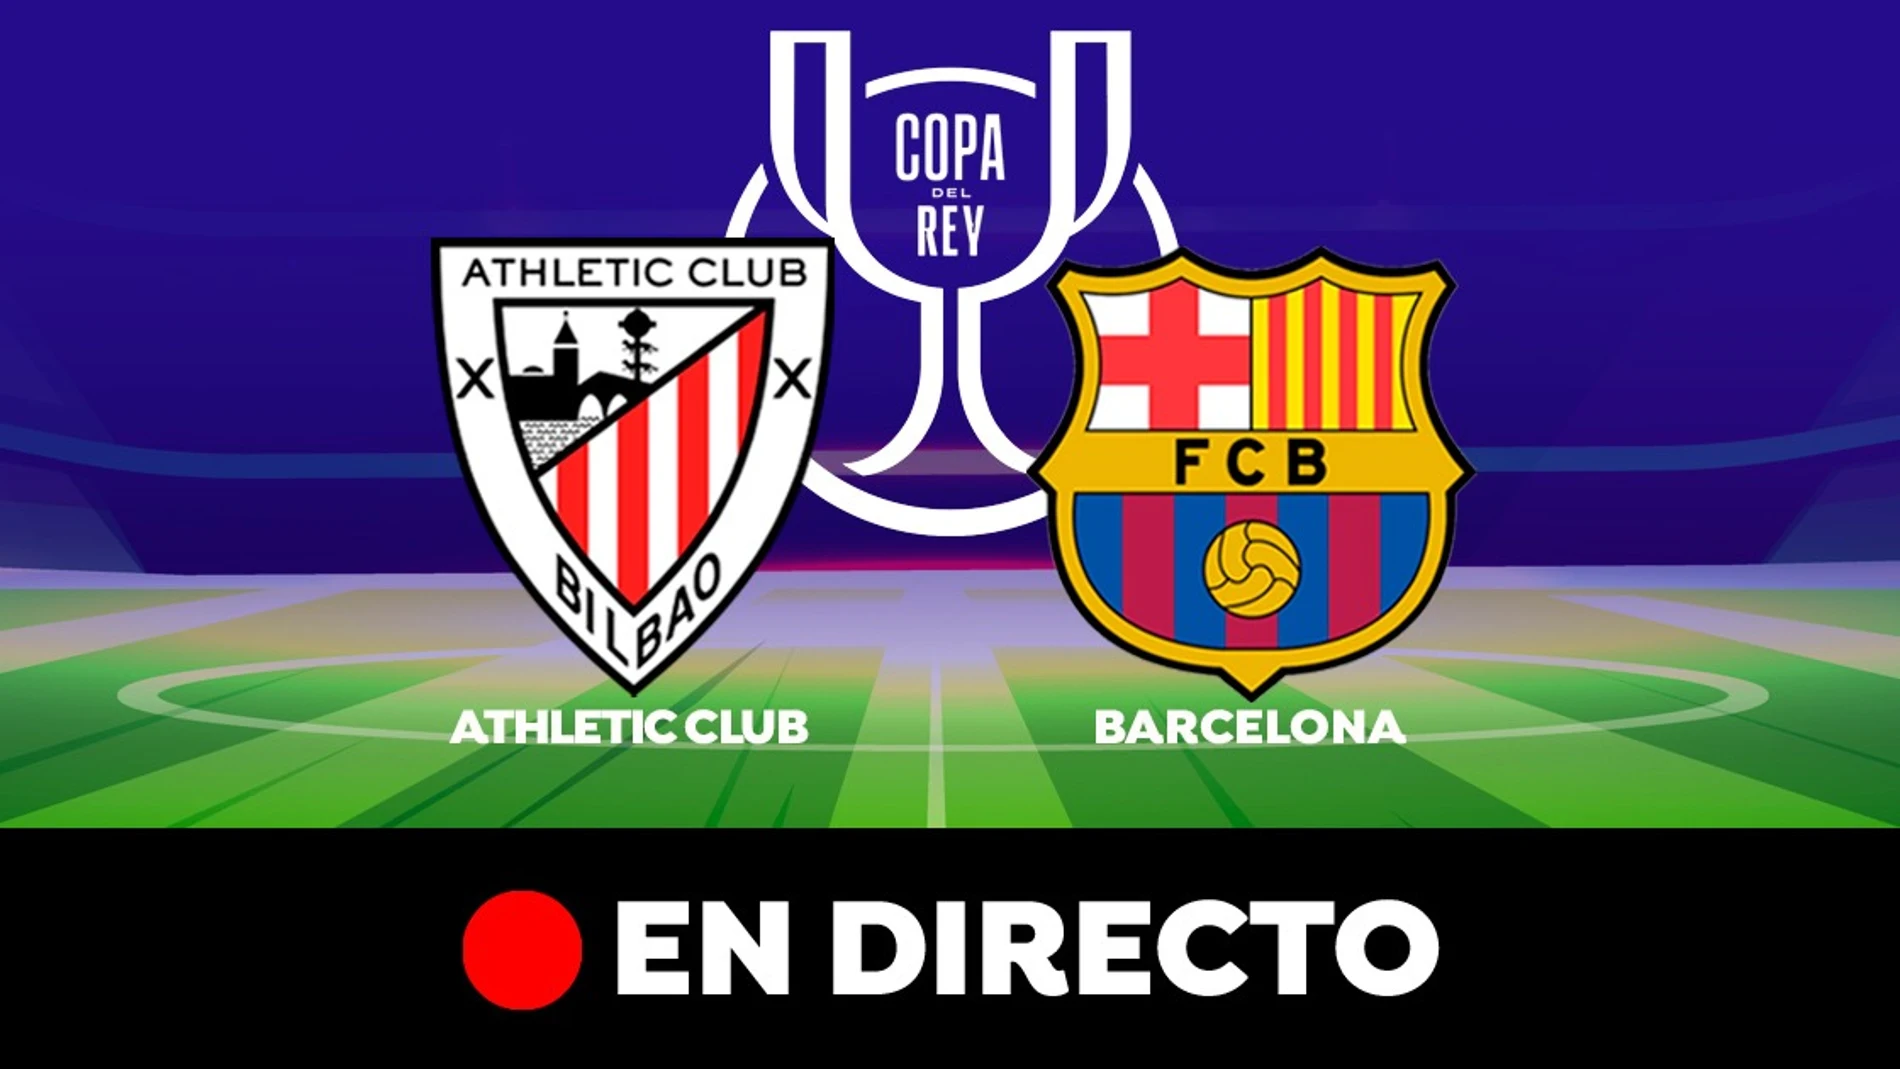 Emborracharse Lío factible Athletic Club - Barcelona en directo: Goles, resultado y partido de la Copa  del Rey